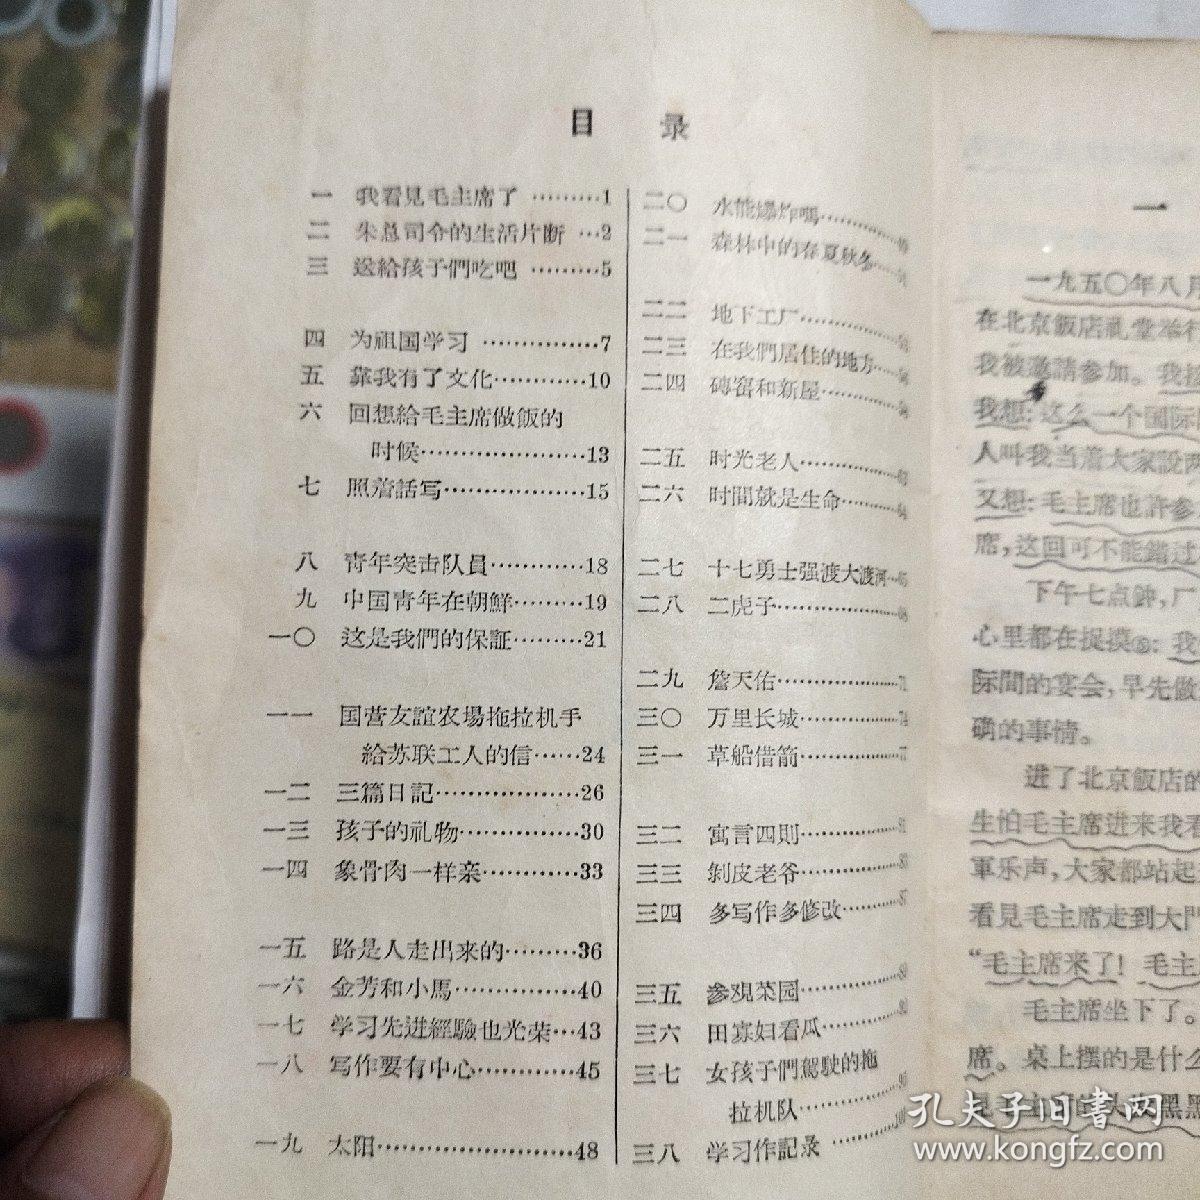 职工业余学校高小班  语文课本 第一册1958